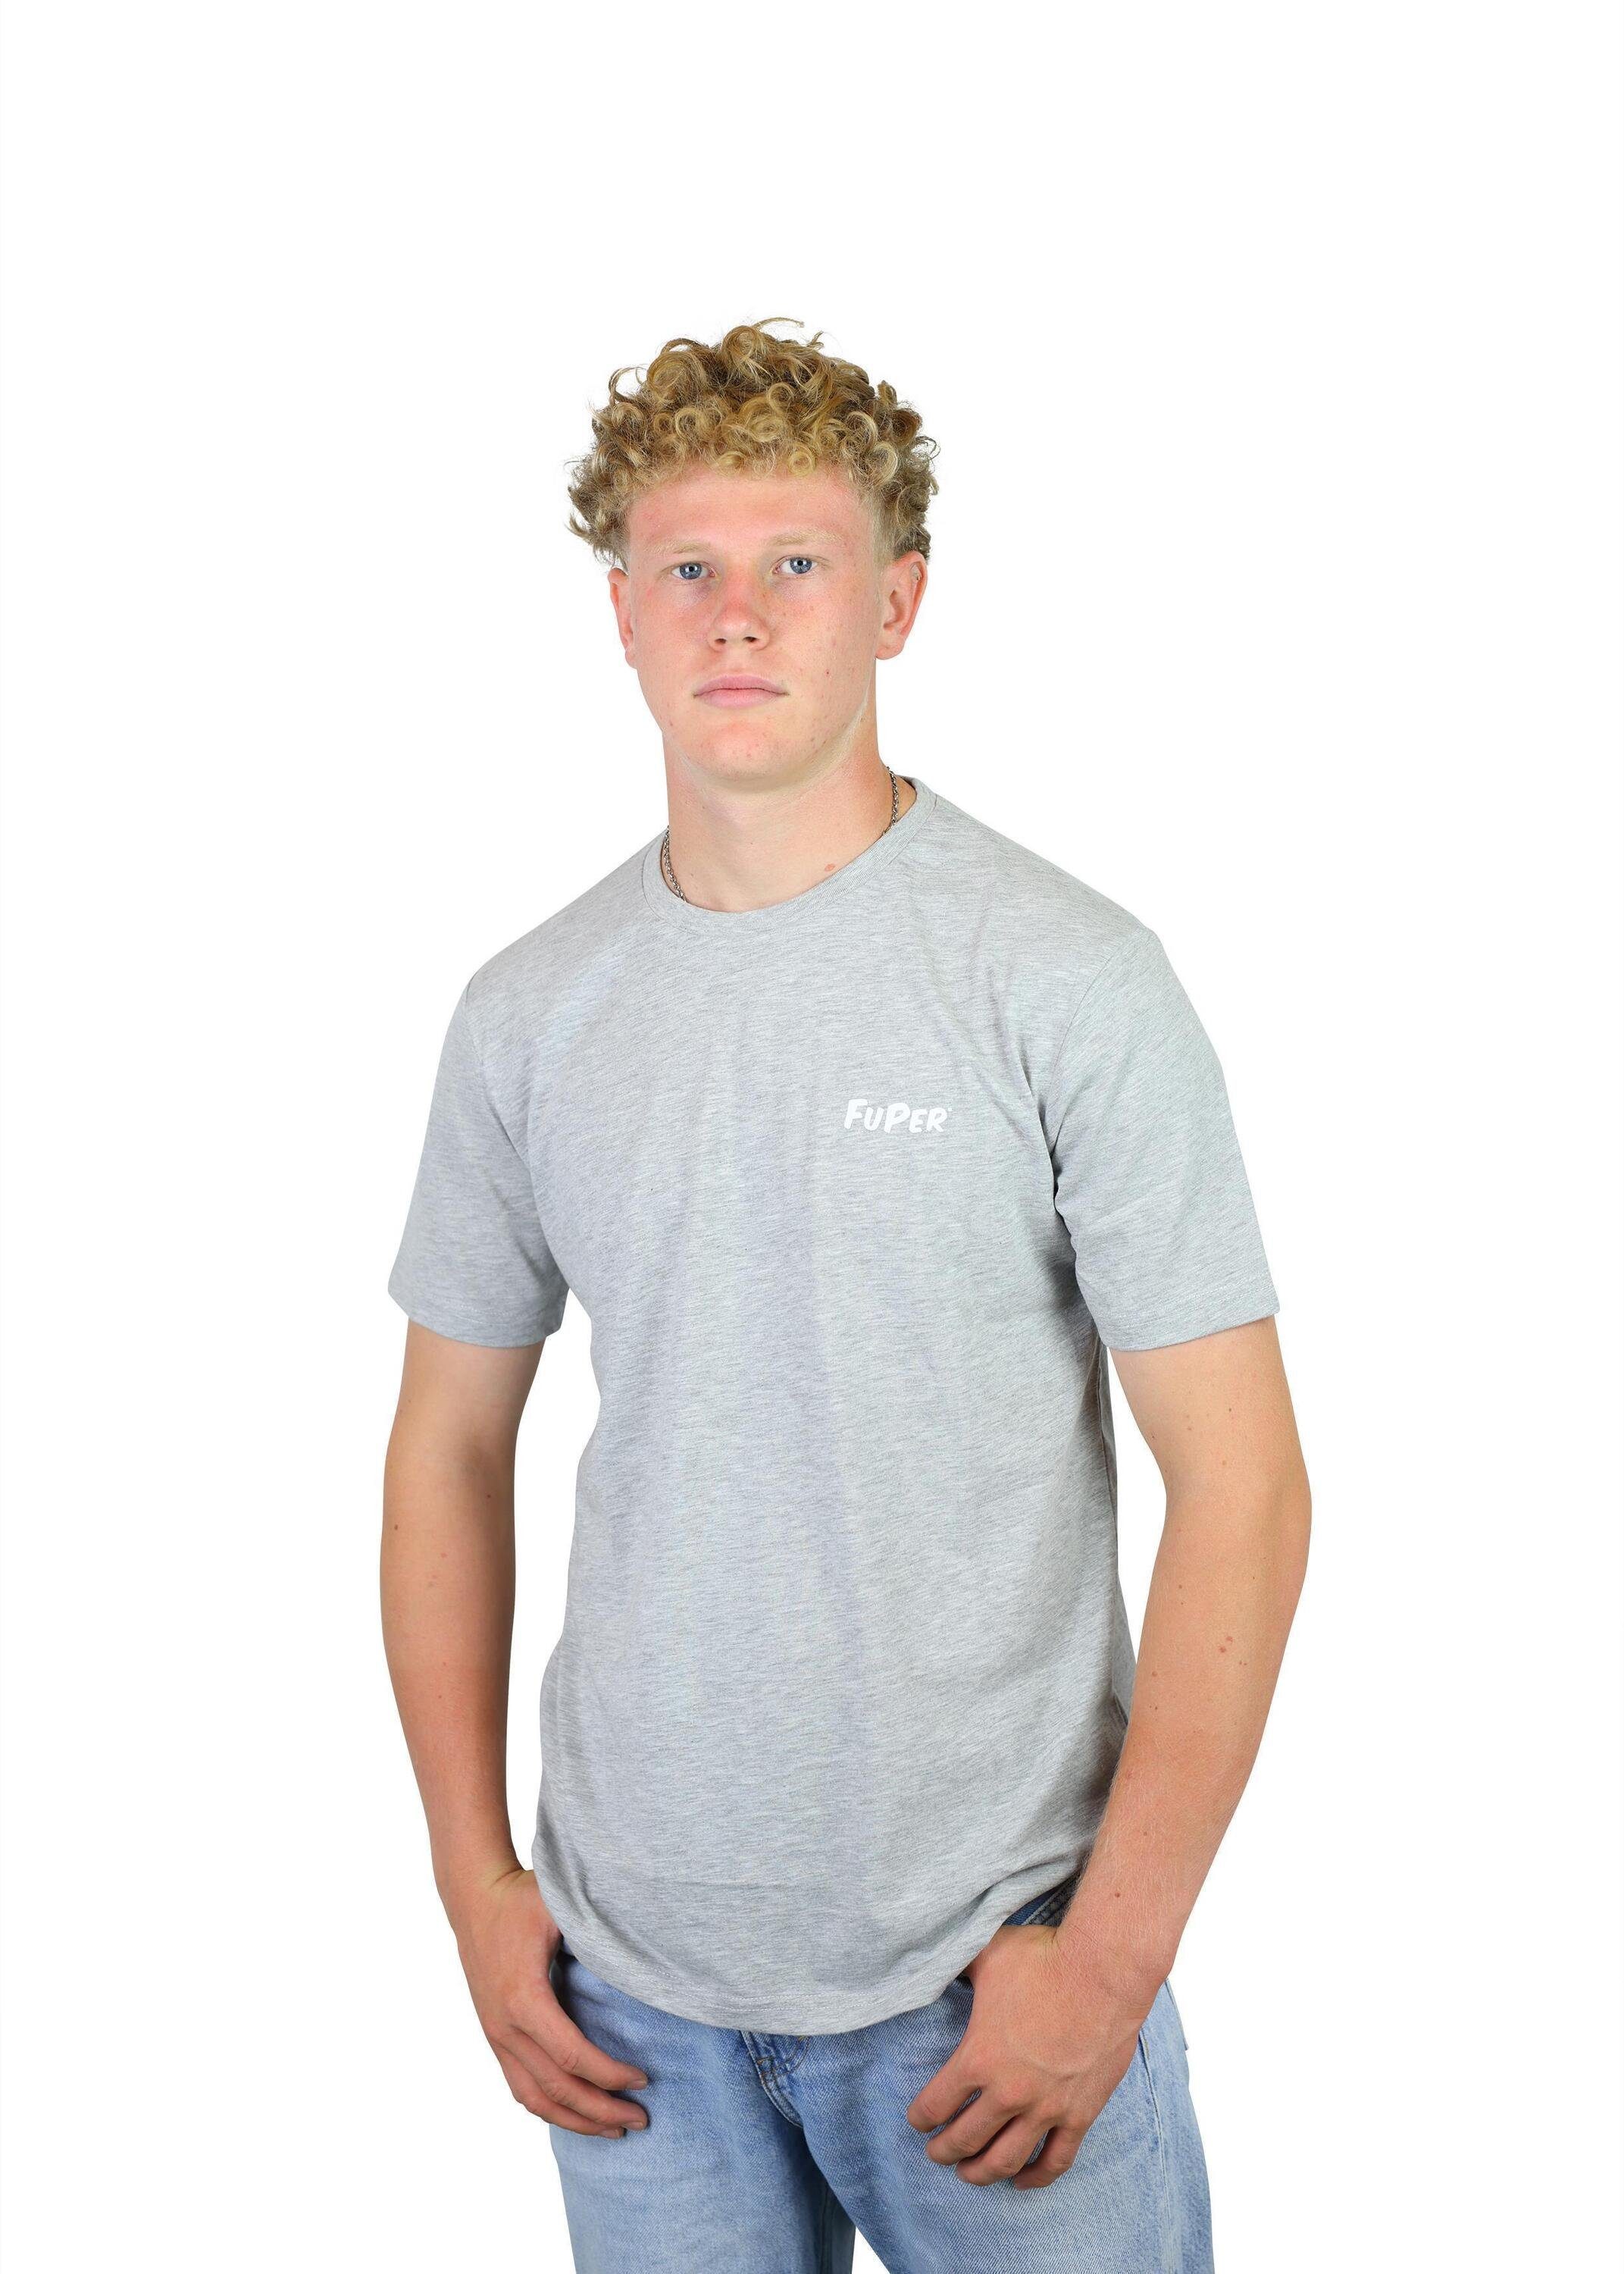 T-Shirt Lifestyle für Grey und Sport Herren, für FuPer aus Baumwolle Luis